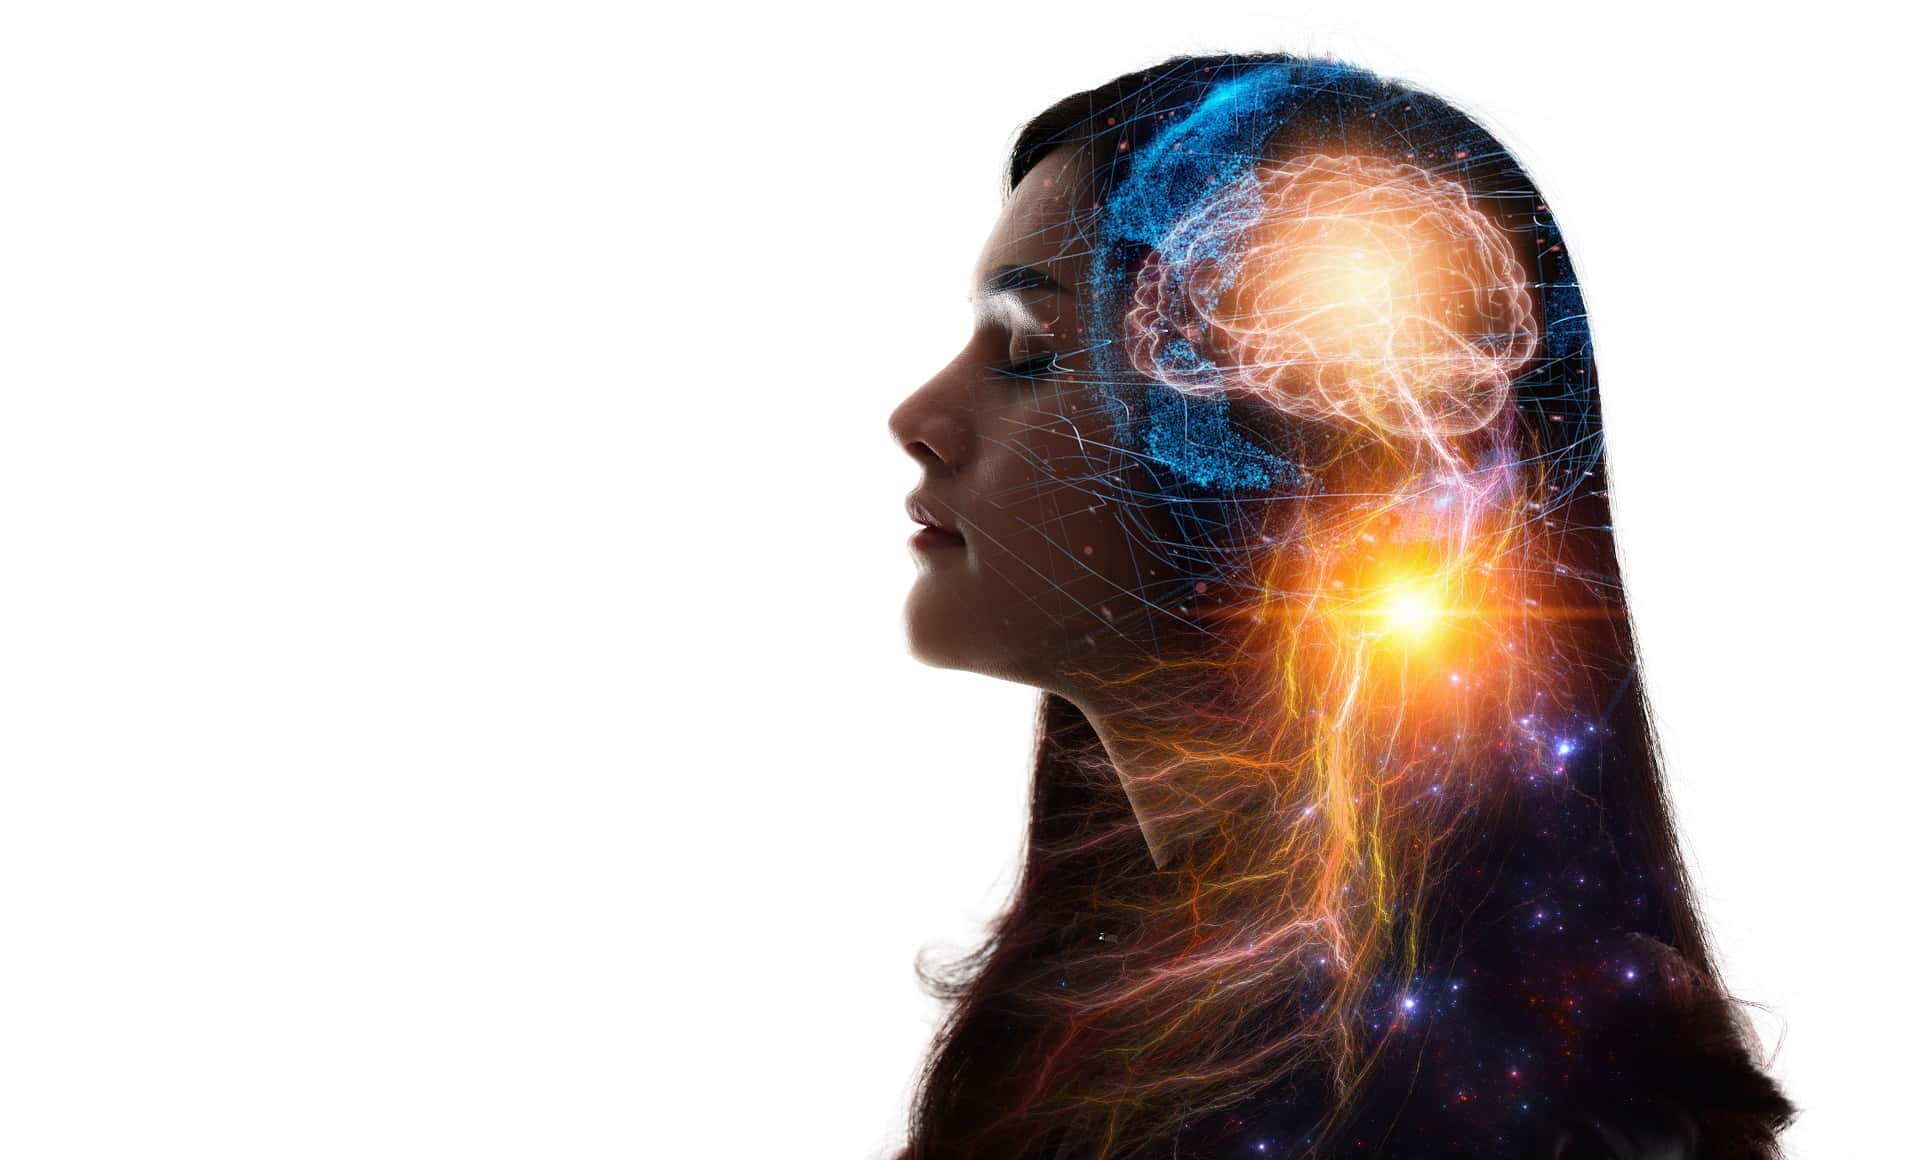 Kvinne med illustrert grafikk av hjerne og hjerneaktivitet